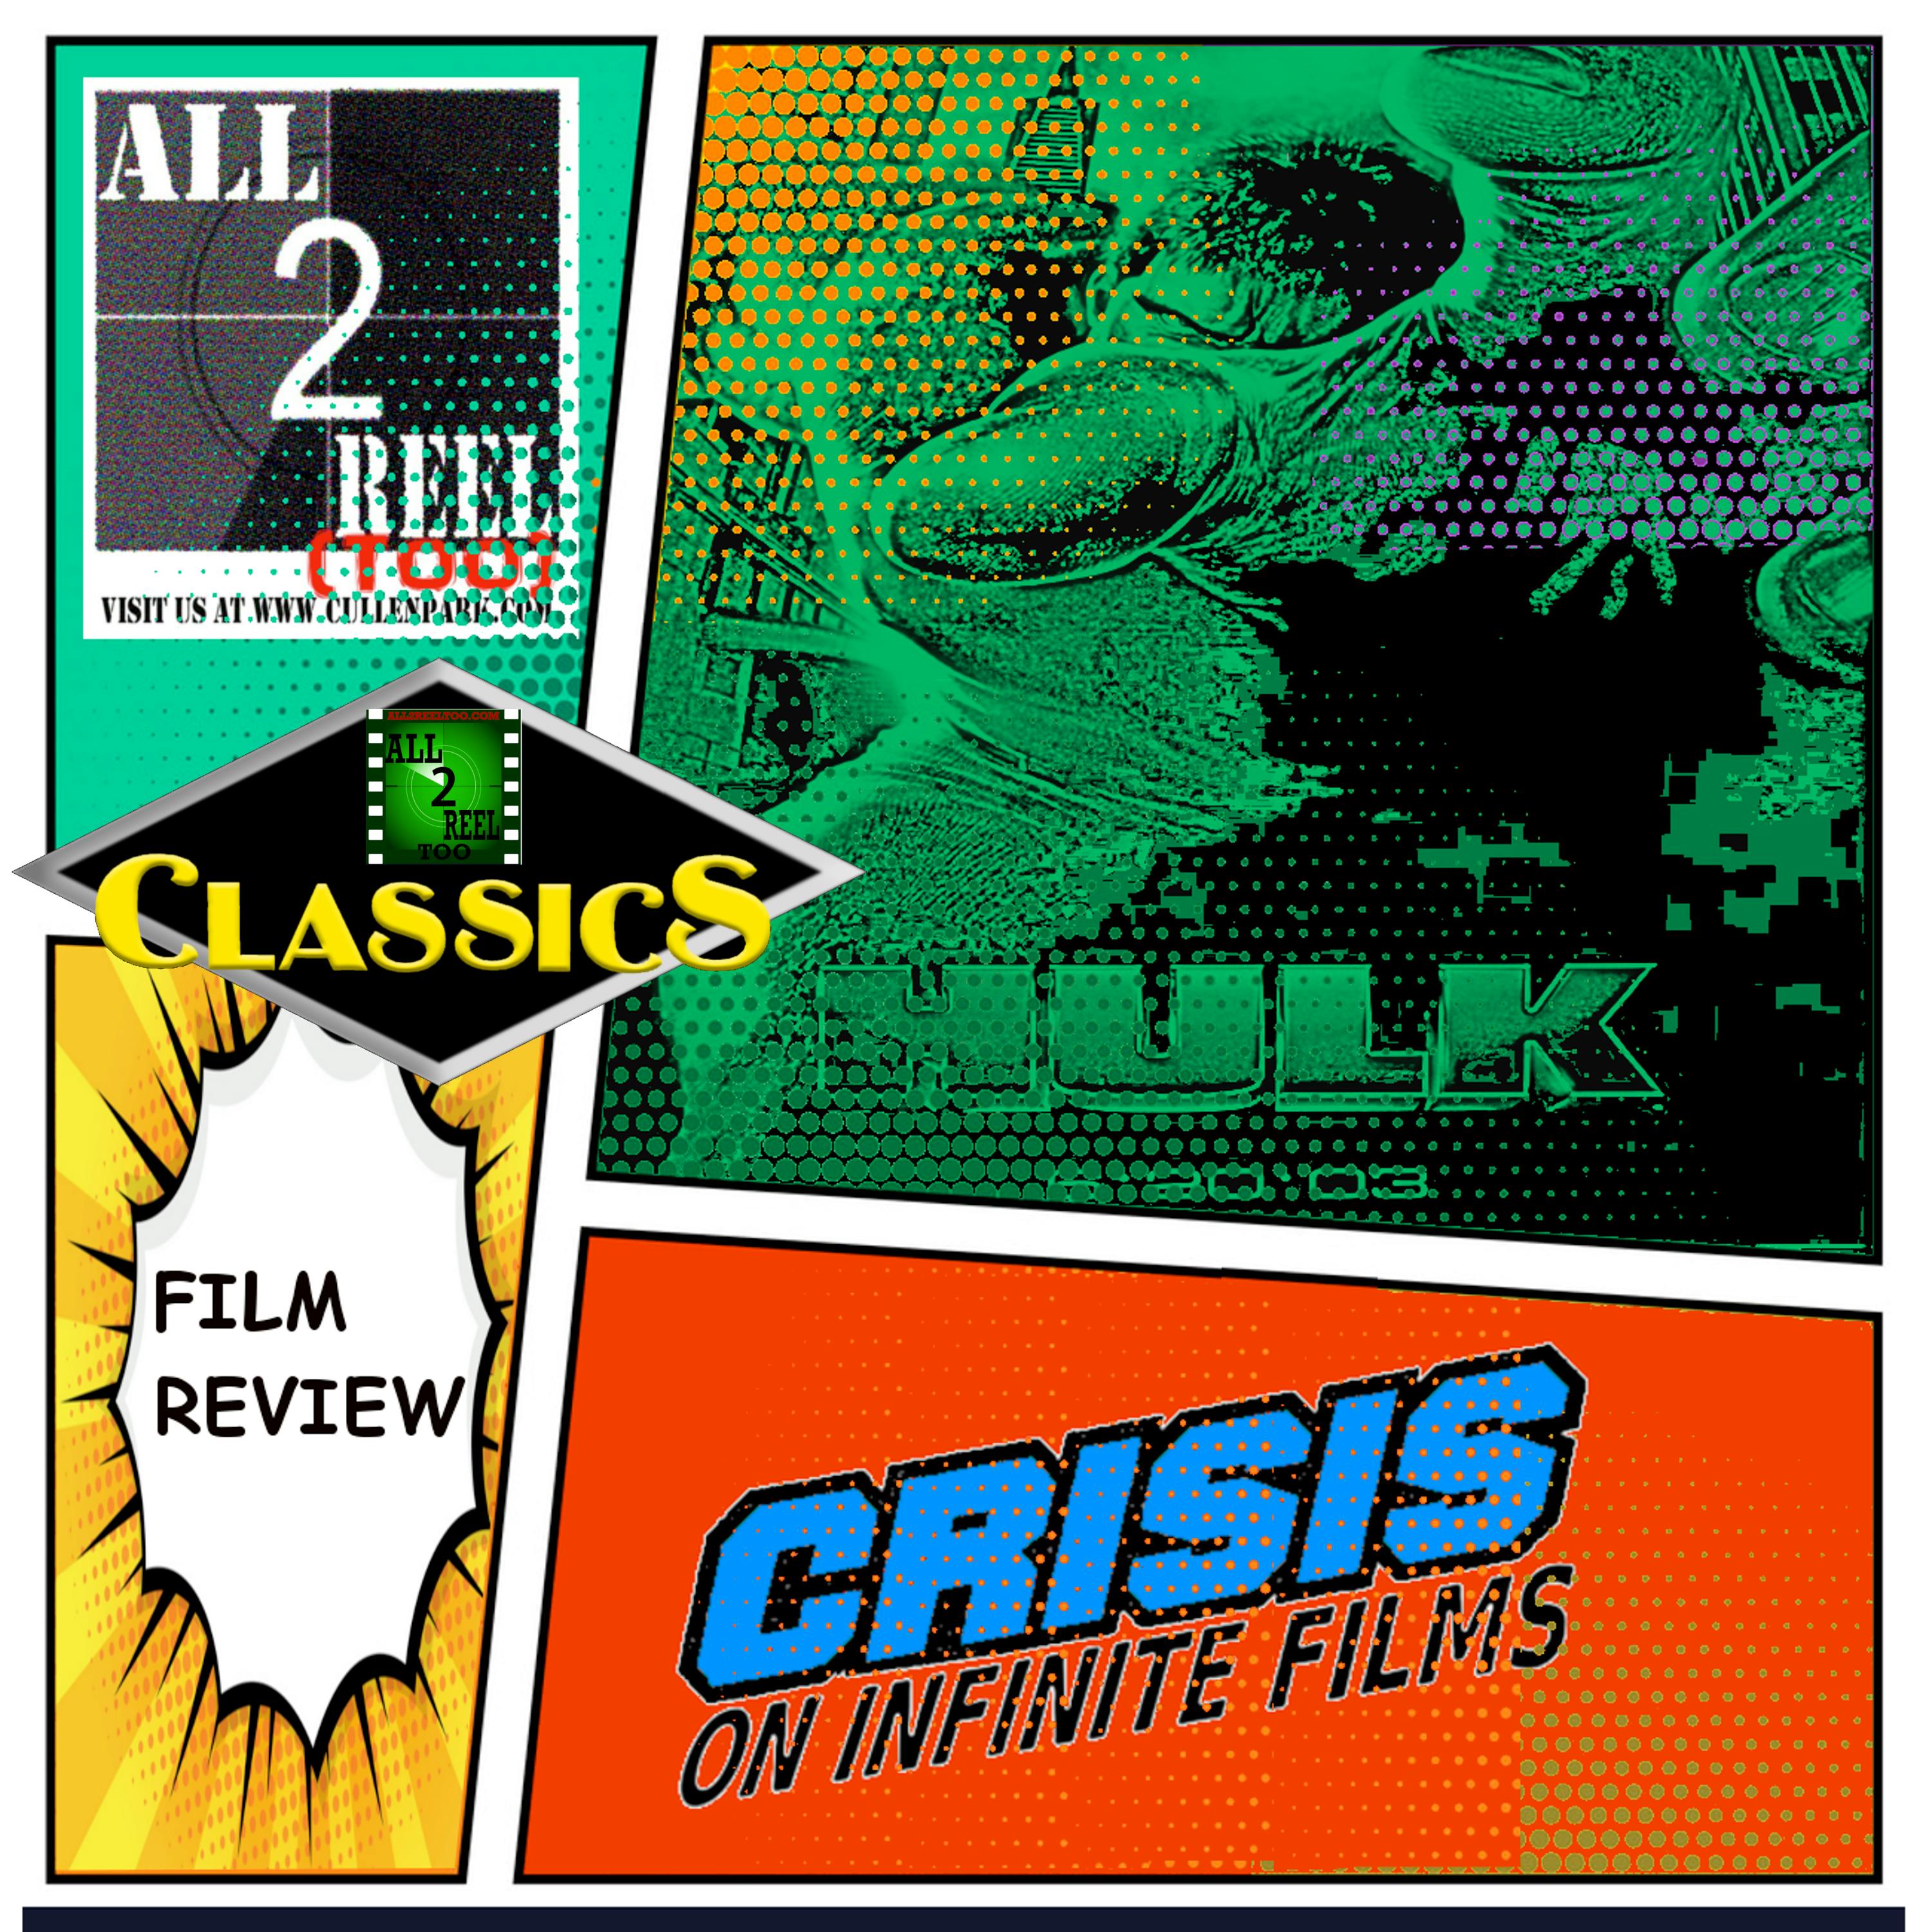 ALL2REELTOO CLASSICS - Hulk (2003)-Crisis On Infinite Films